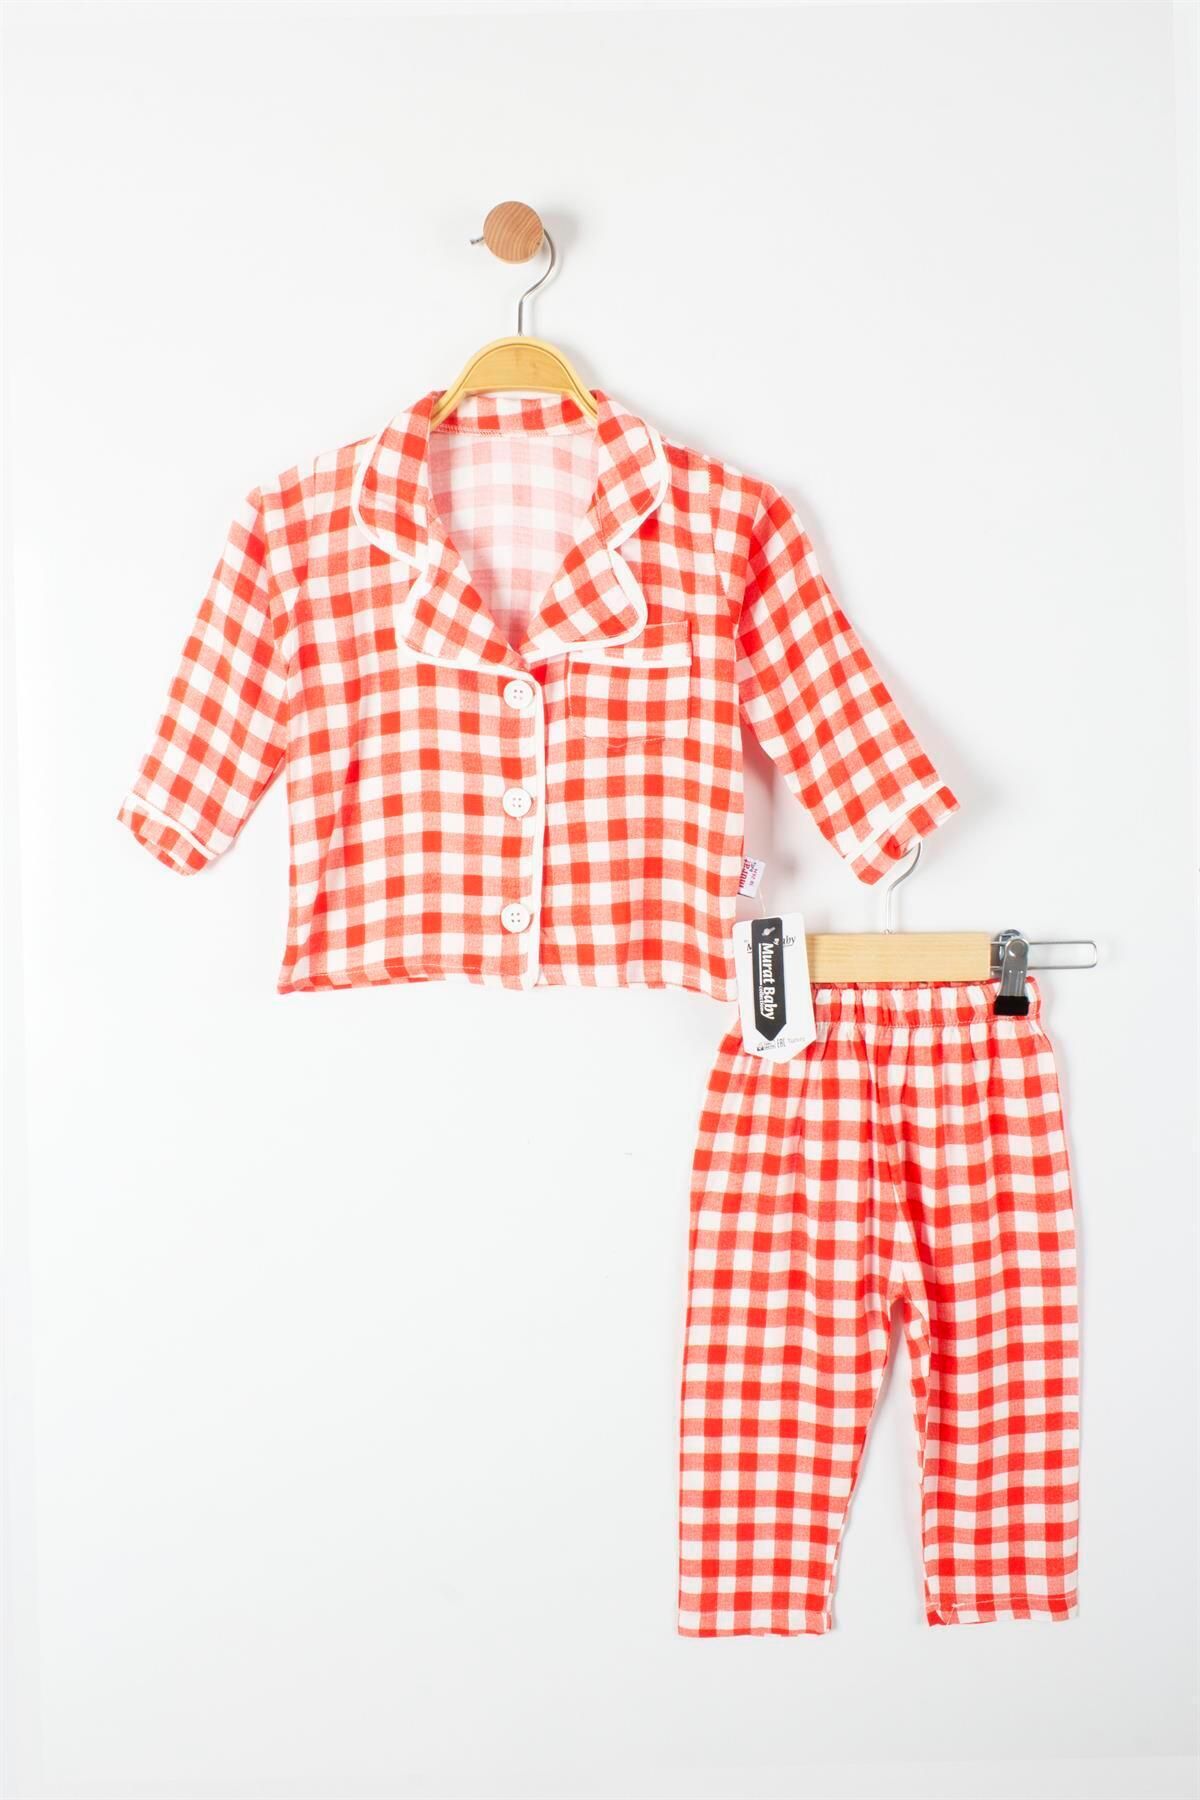 TRENDİMİZBİR Trendimizbir Kareli Düğmeli Kız Bebek Pijama Takımı